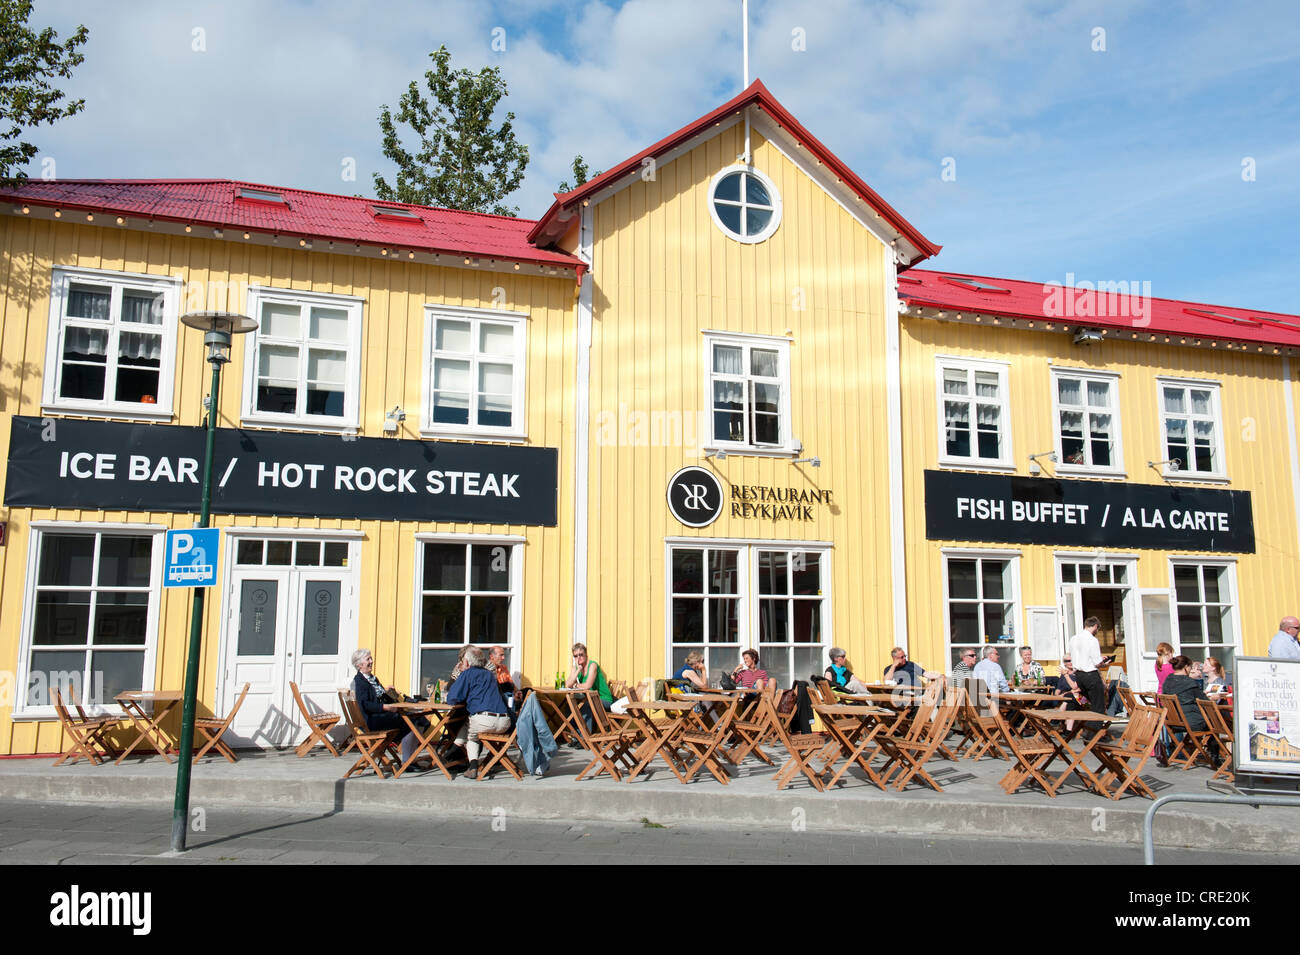 Construcción de la fachada con el logo del bar y el Restaurante Steak House, Reykjavik, Reykjavik, Islandia, Escandinavia, Europa septentrional, Europa Foto de stock